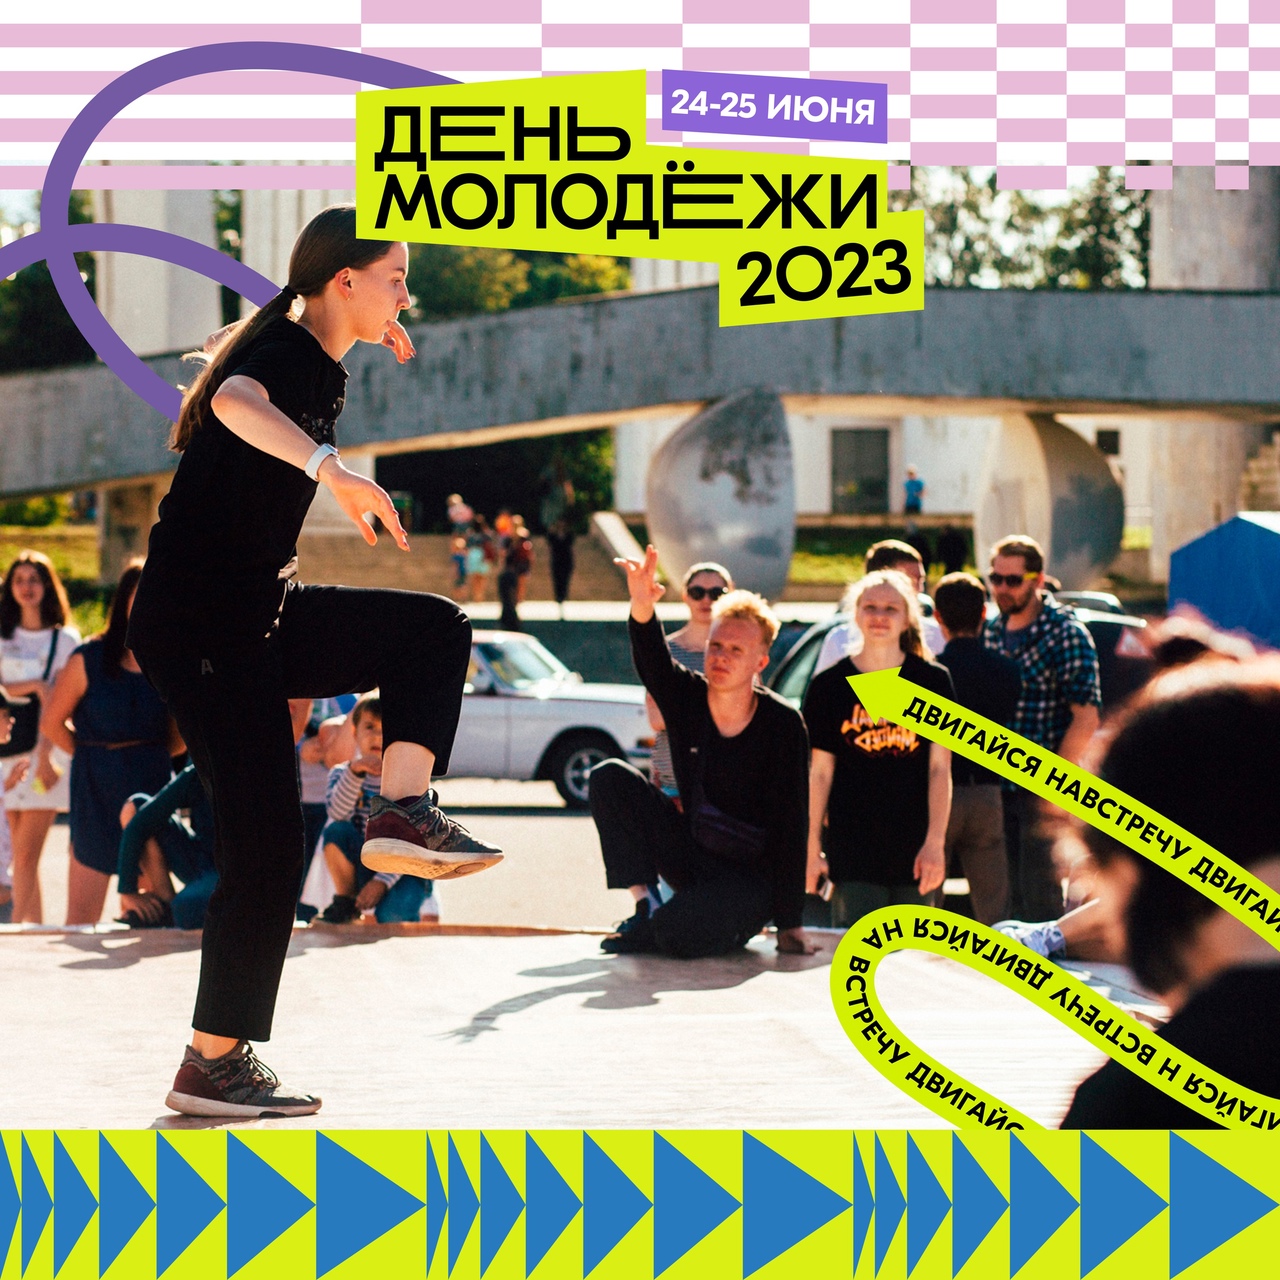 В День молодёжи будет перекрыто движение на площади Победы-Софийской и изменено движение общественного транспорта.